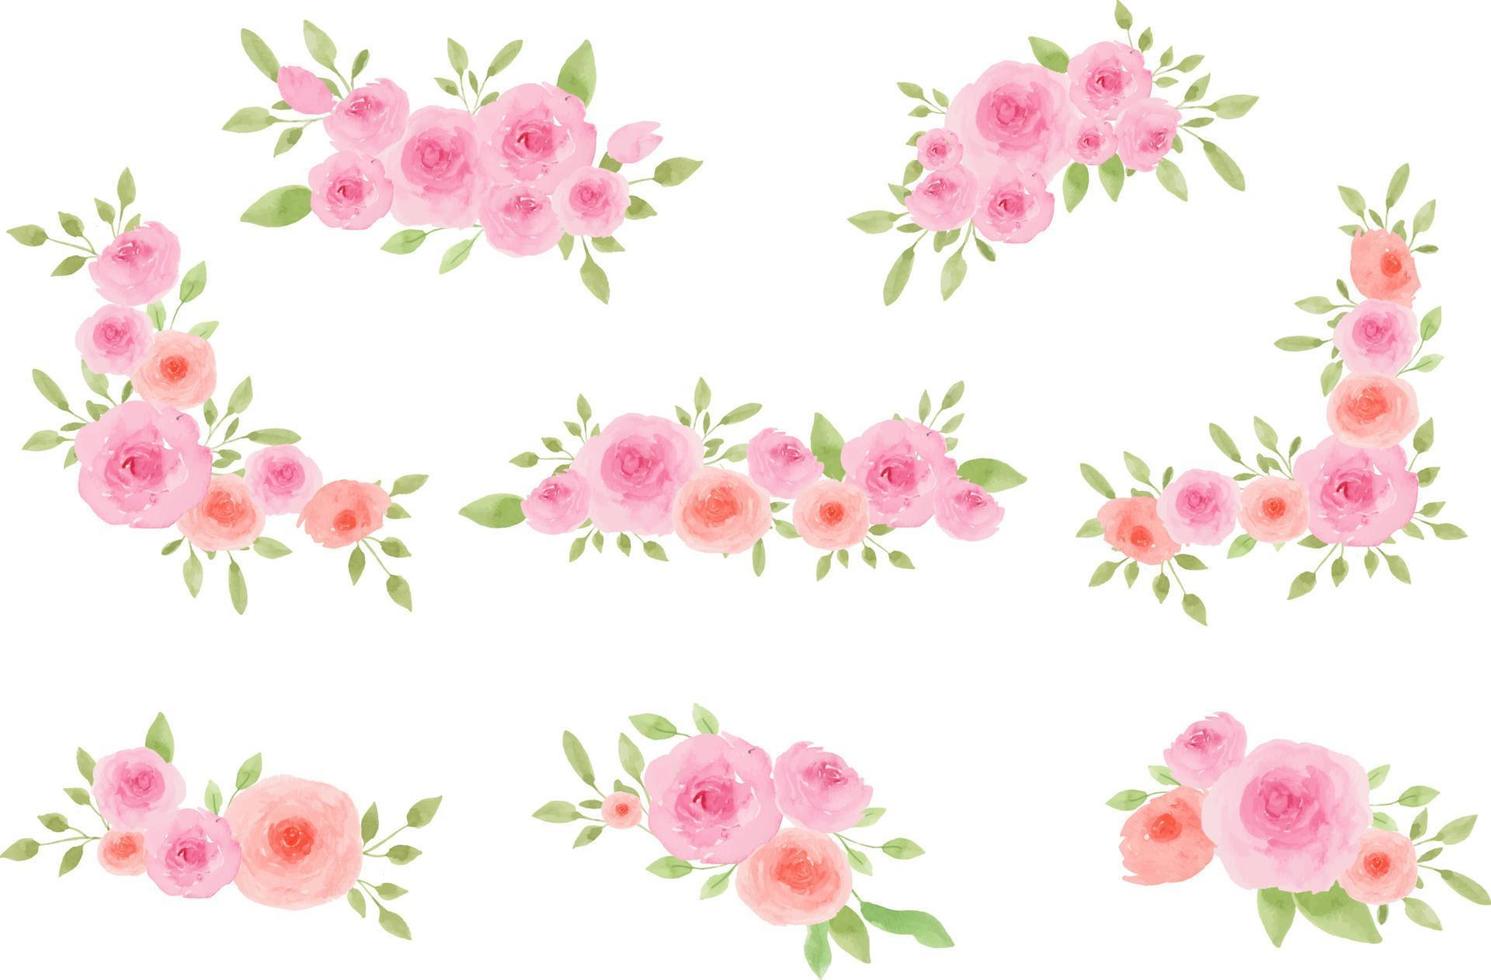 Pink Rose Arrangement Watercolor vector